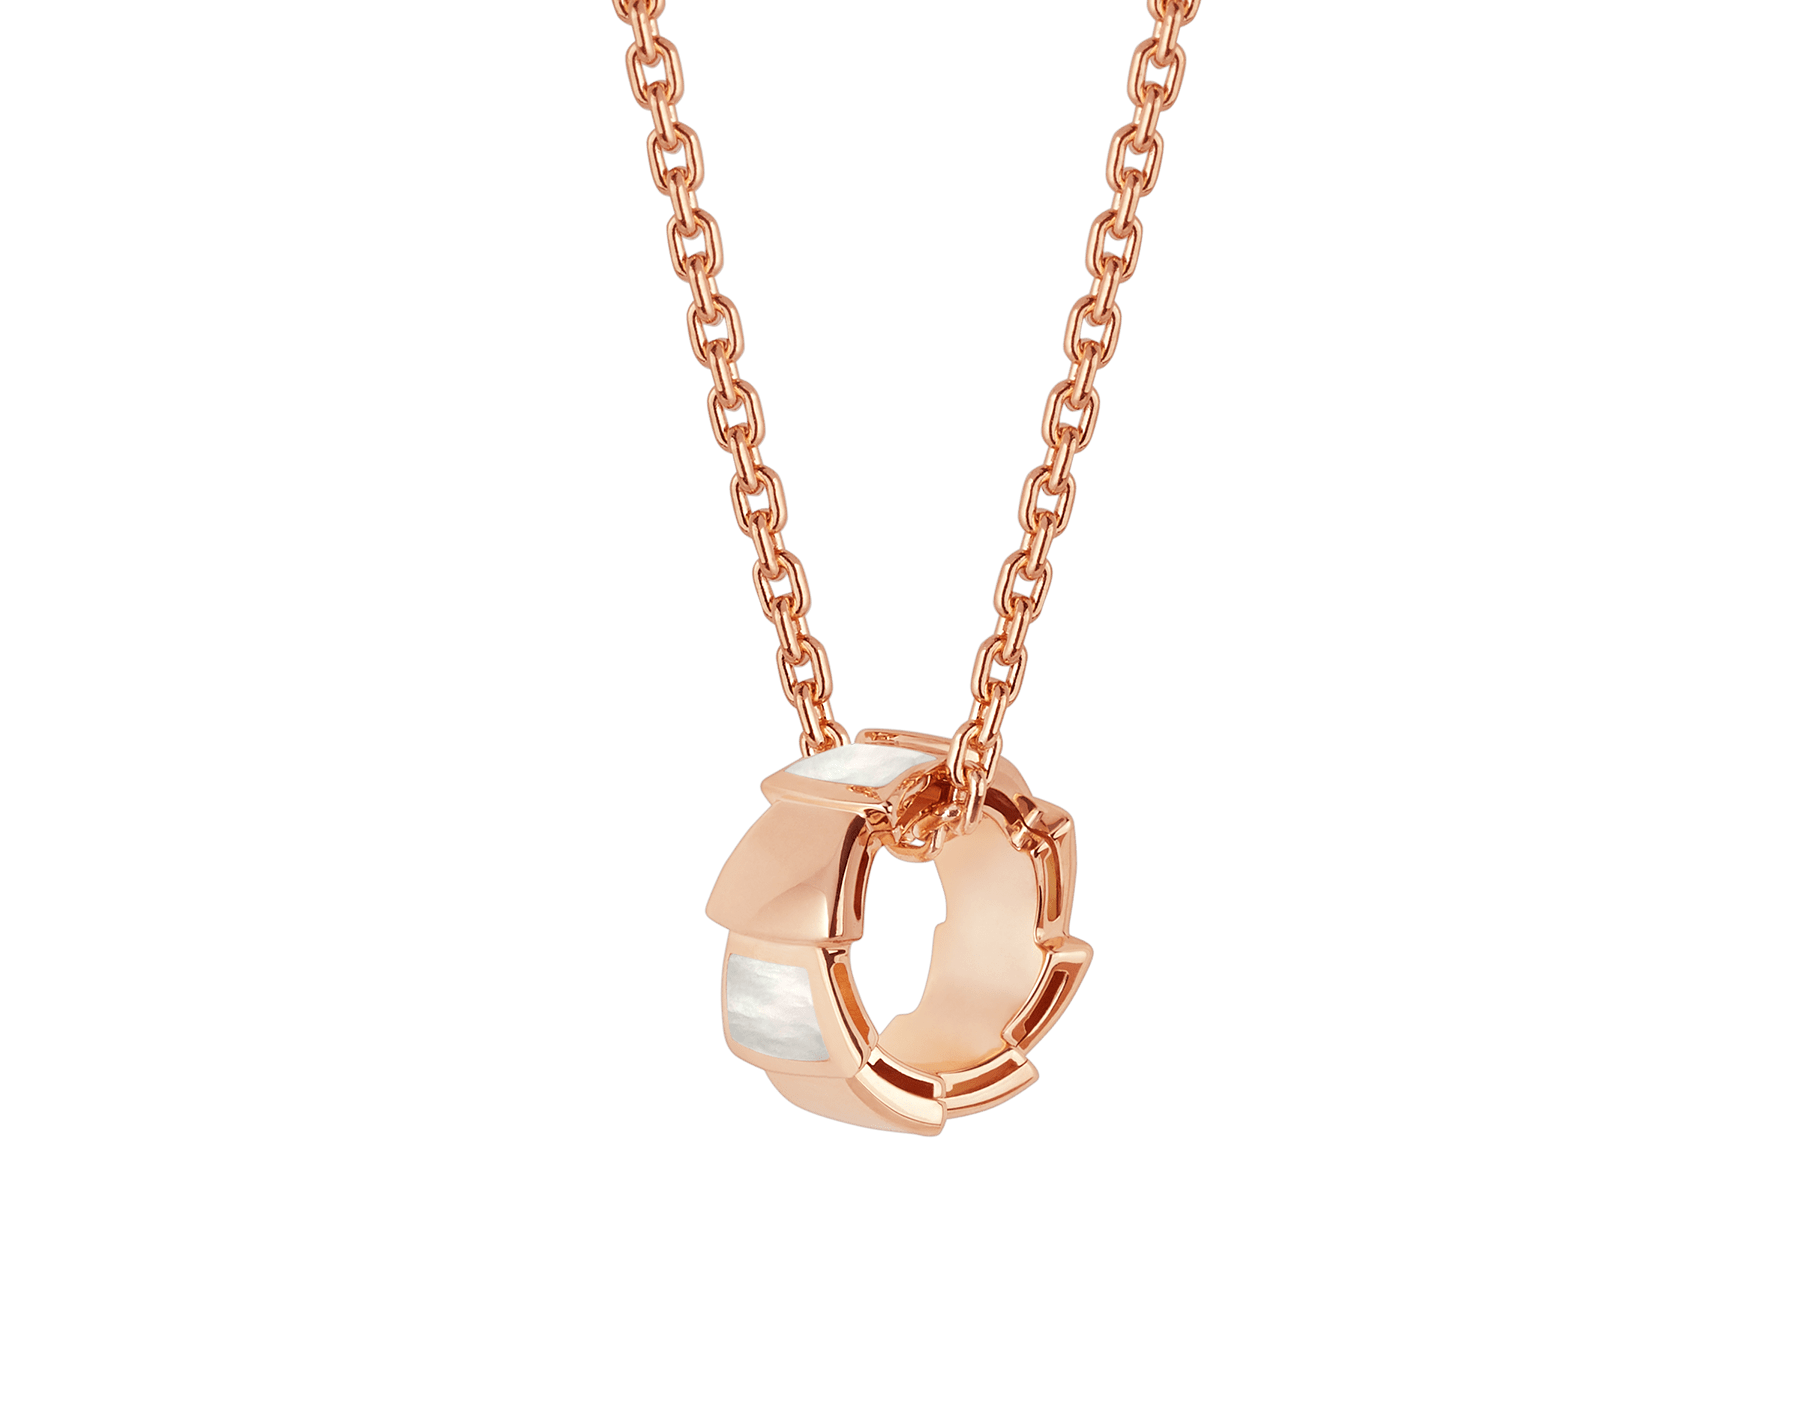 Atacado de joias de design OEM colar de ouro rosa de 18 kt com conjunto de pingente de joias OEM / ODM com elementos de madrepérola